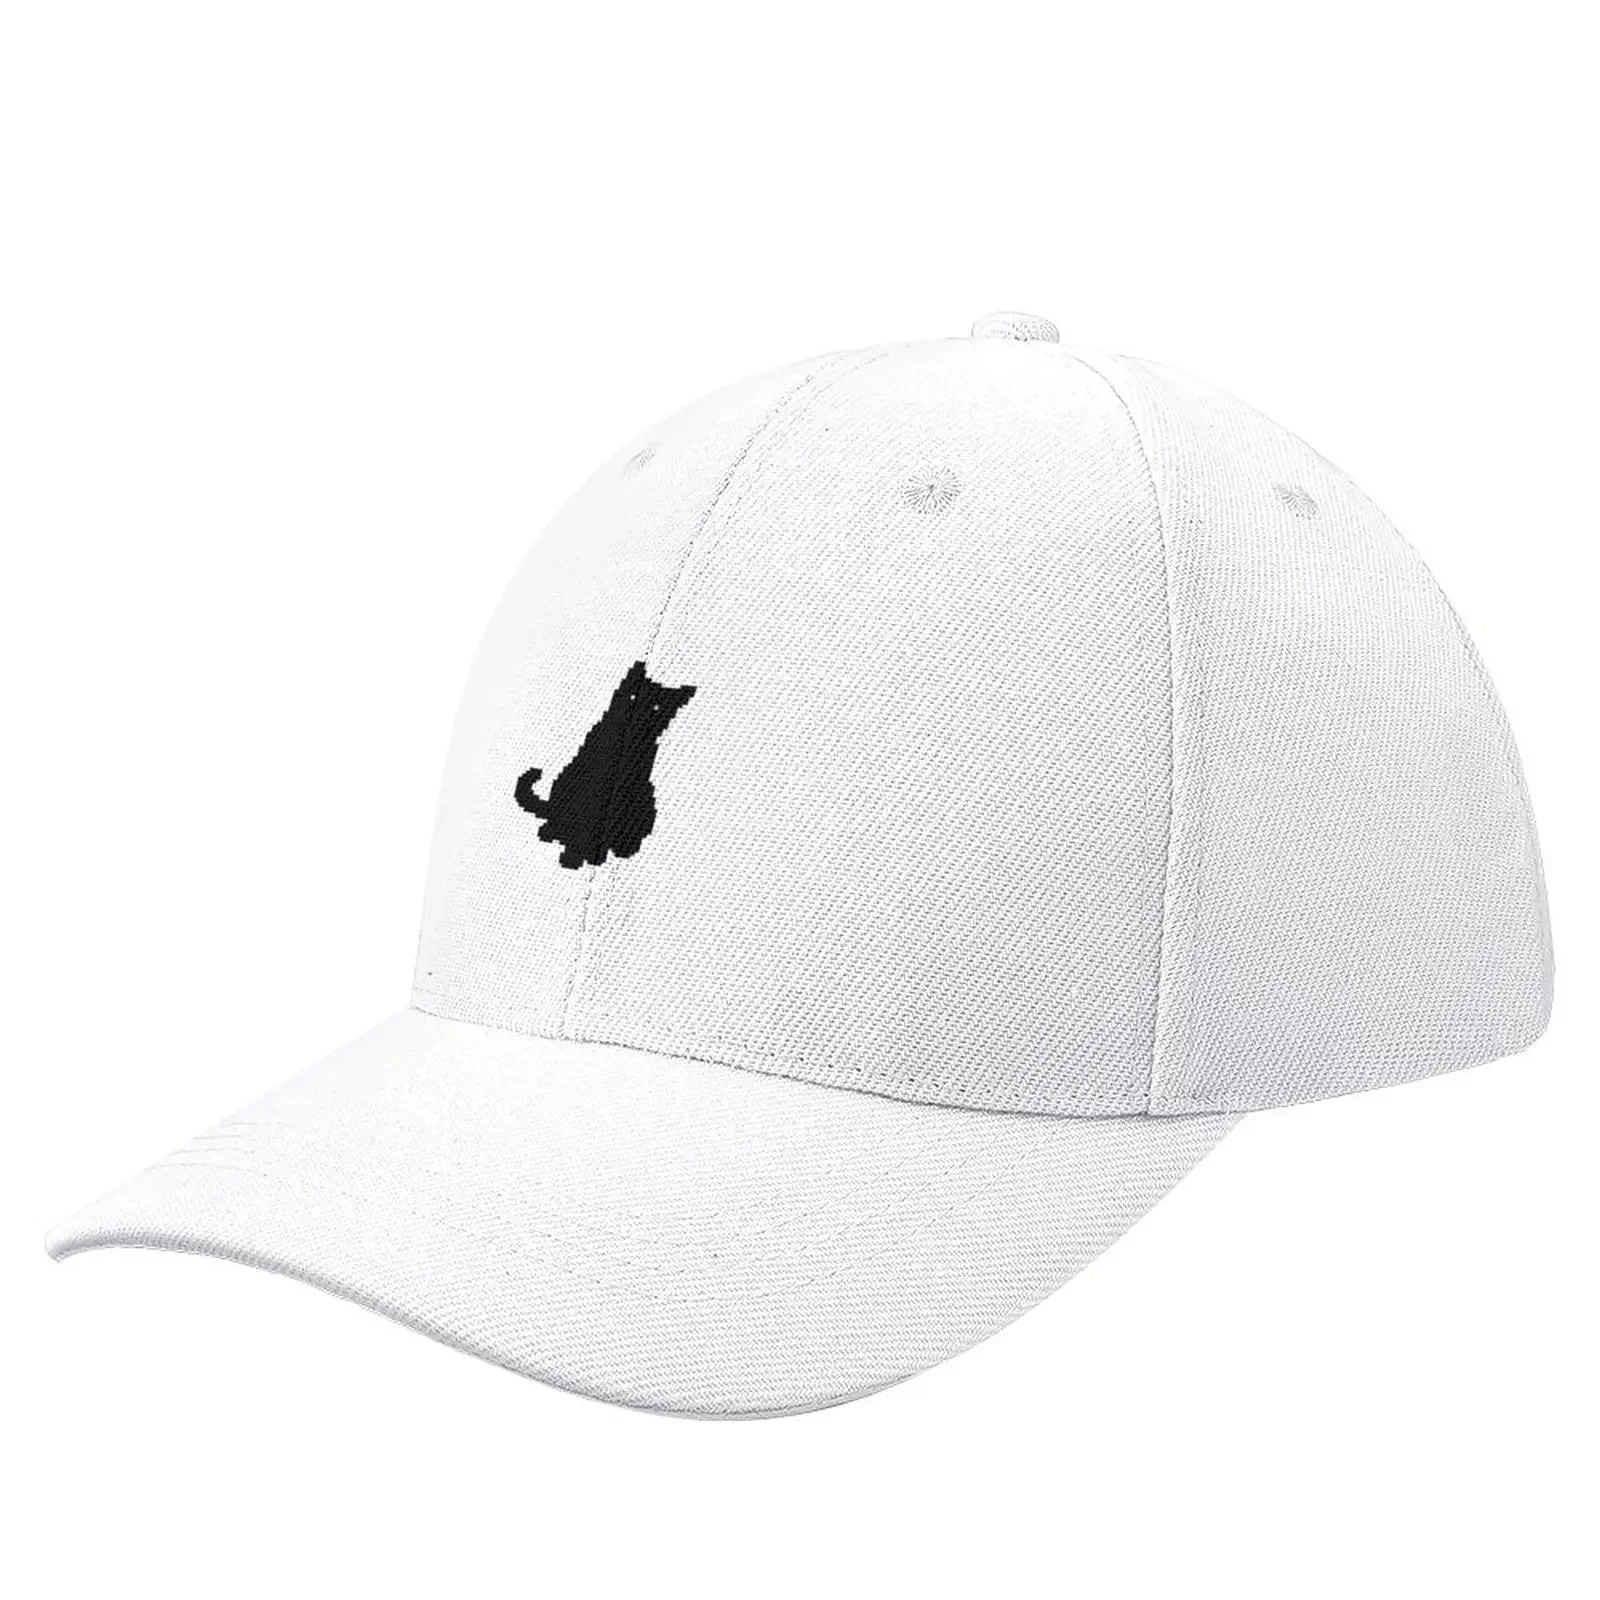 

Void cat - Sit Baseball Cap New Hat Snapback Cap Streetwear Women Hat Men'S